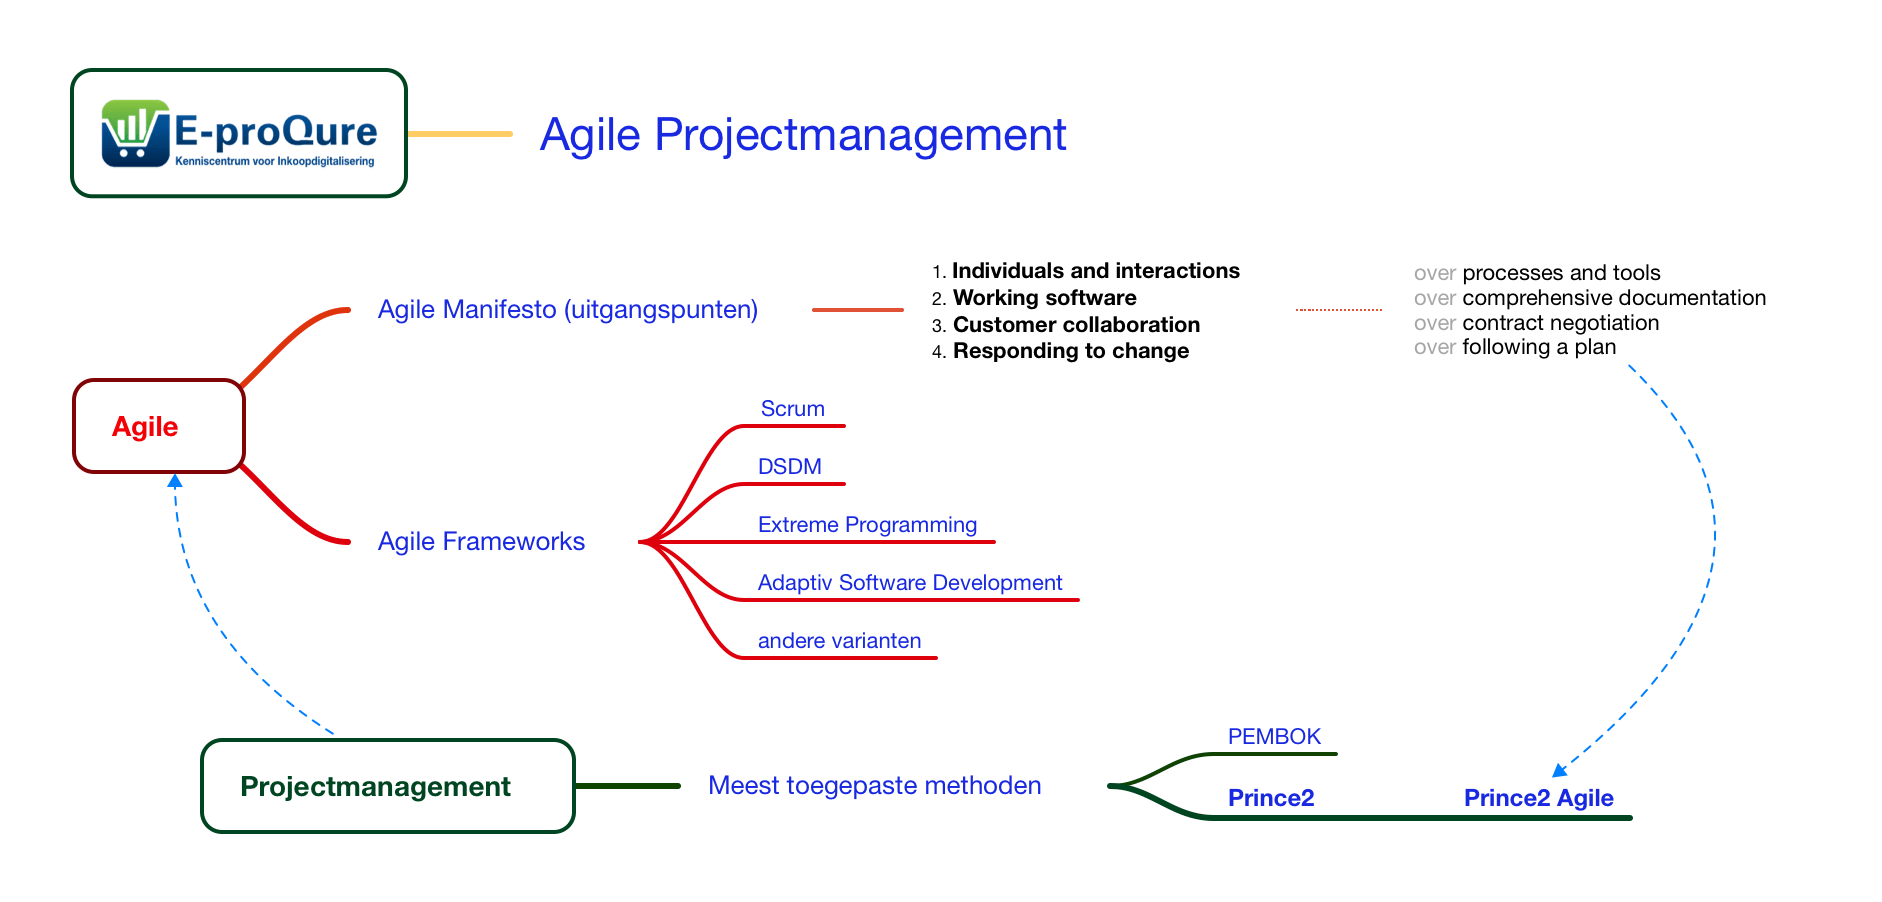 E-proQure Agile Projectmanagement